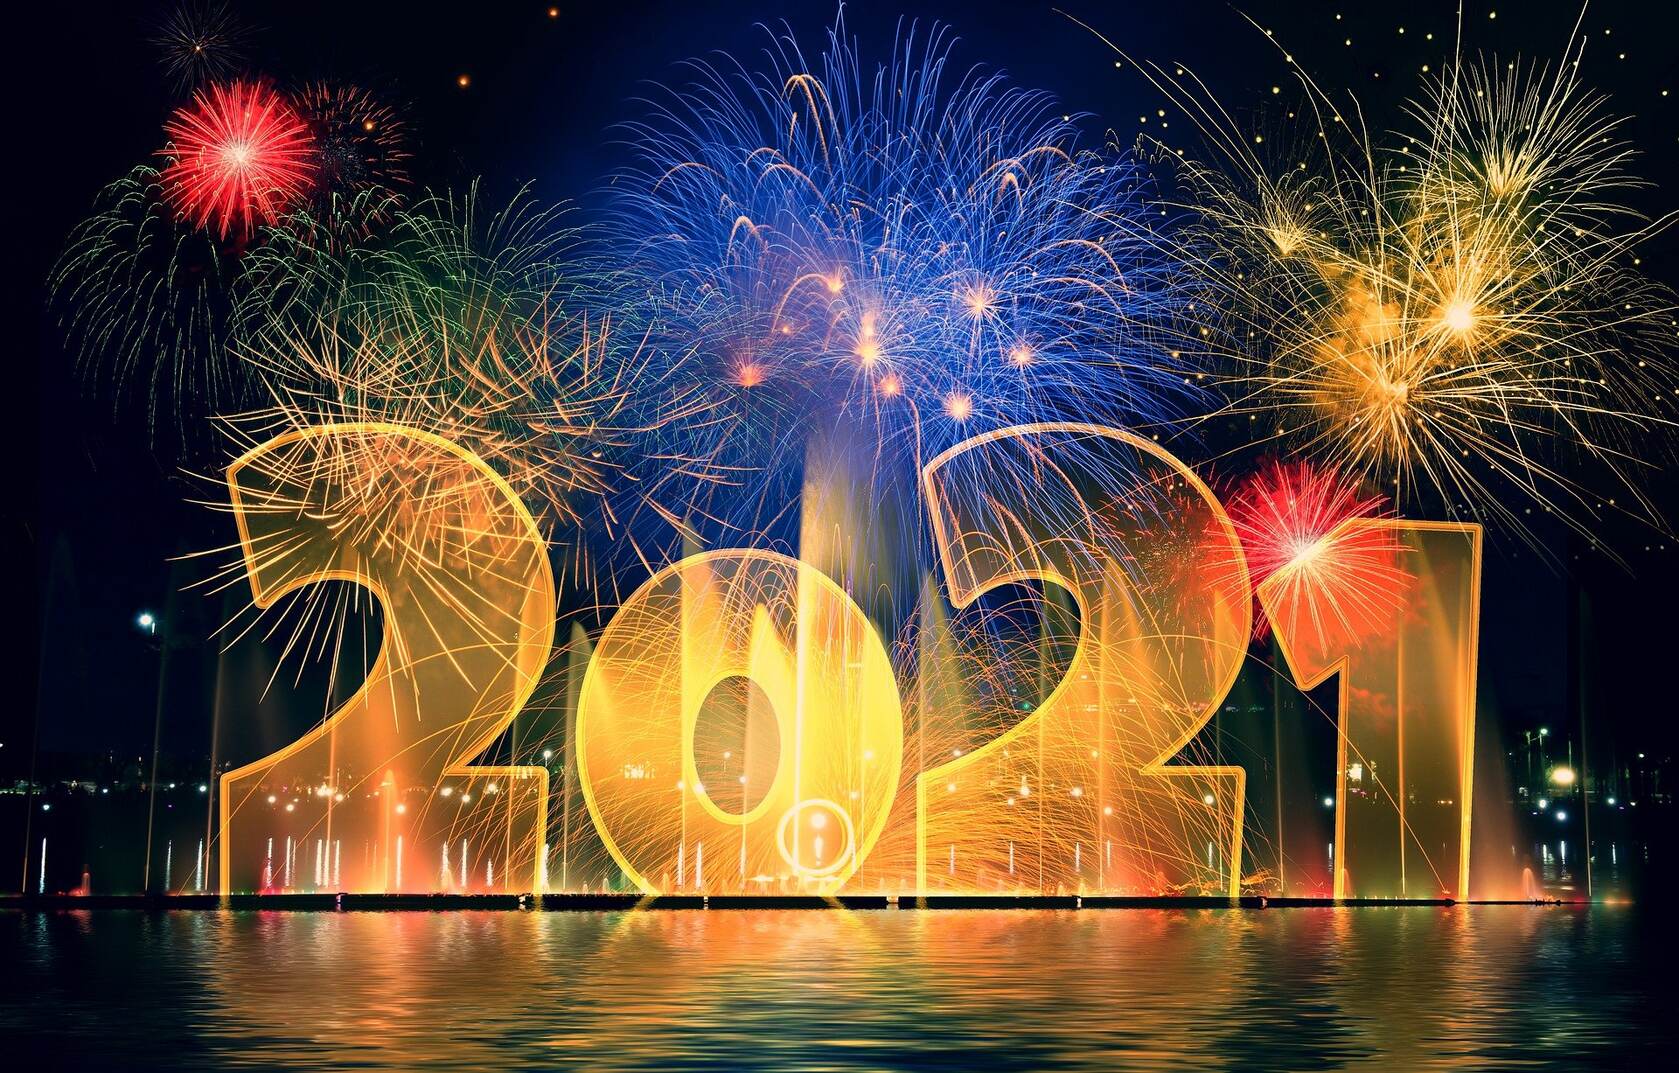 2021文字壁纸 新年 烟花爆竹 新的一年喜庆节日文字壁纸图片第1张图片